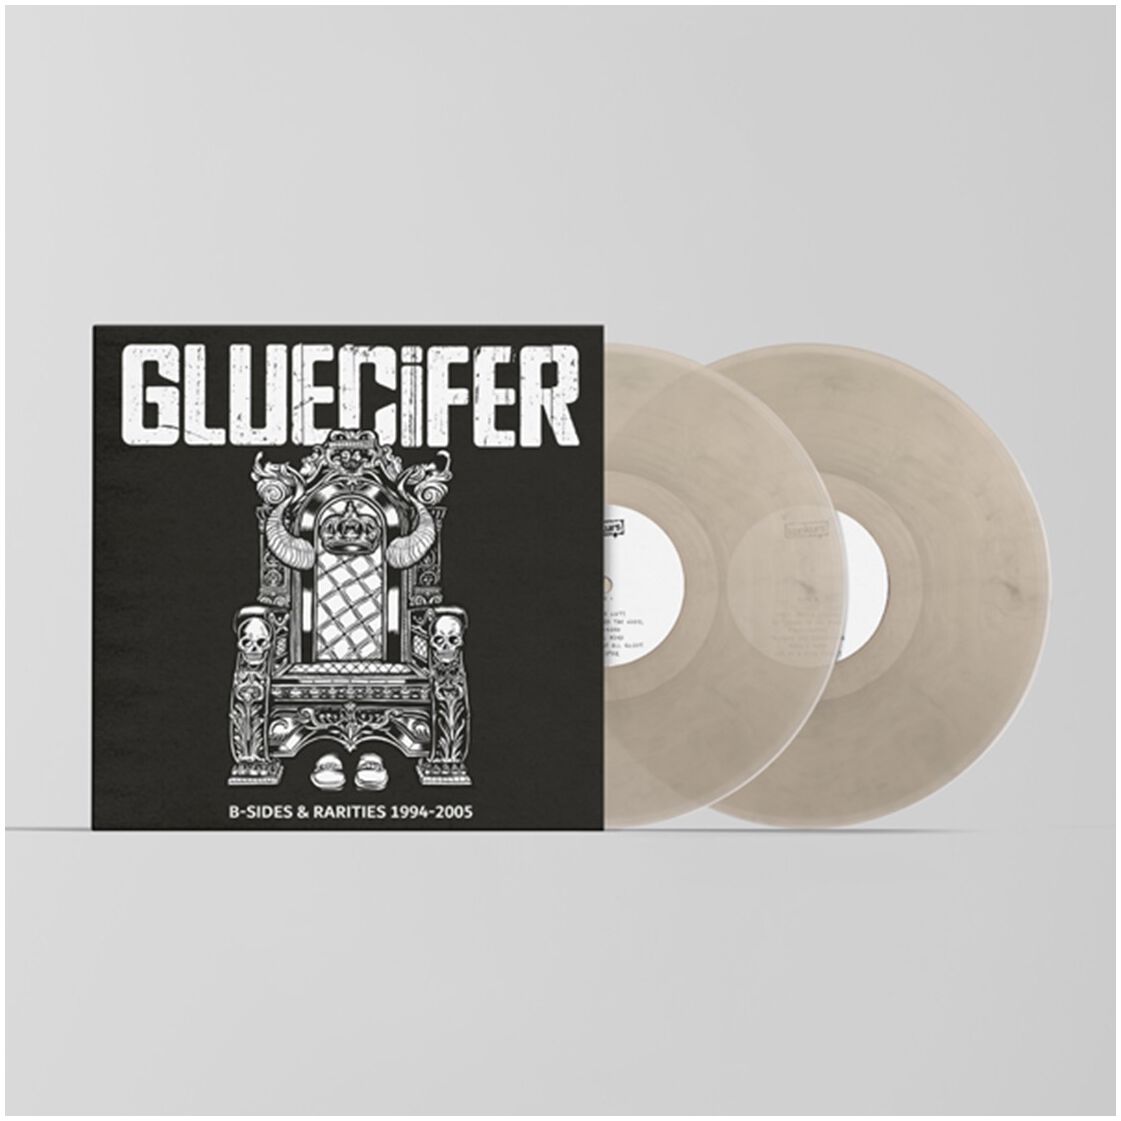 B-Sides & Rarities 1994-2005 von Gluecifer - LP (Coloured, Limited Edition, Standard)